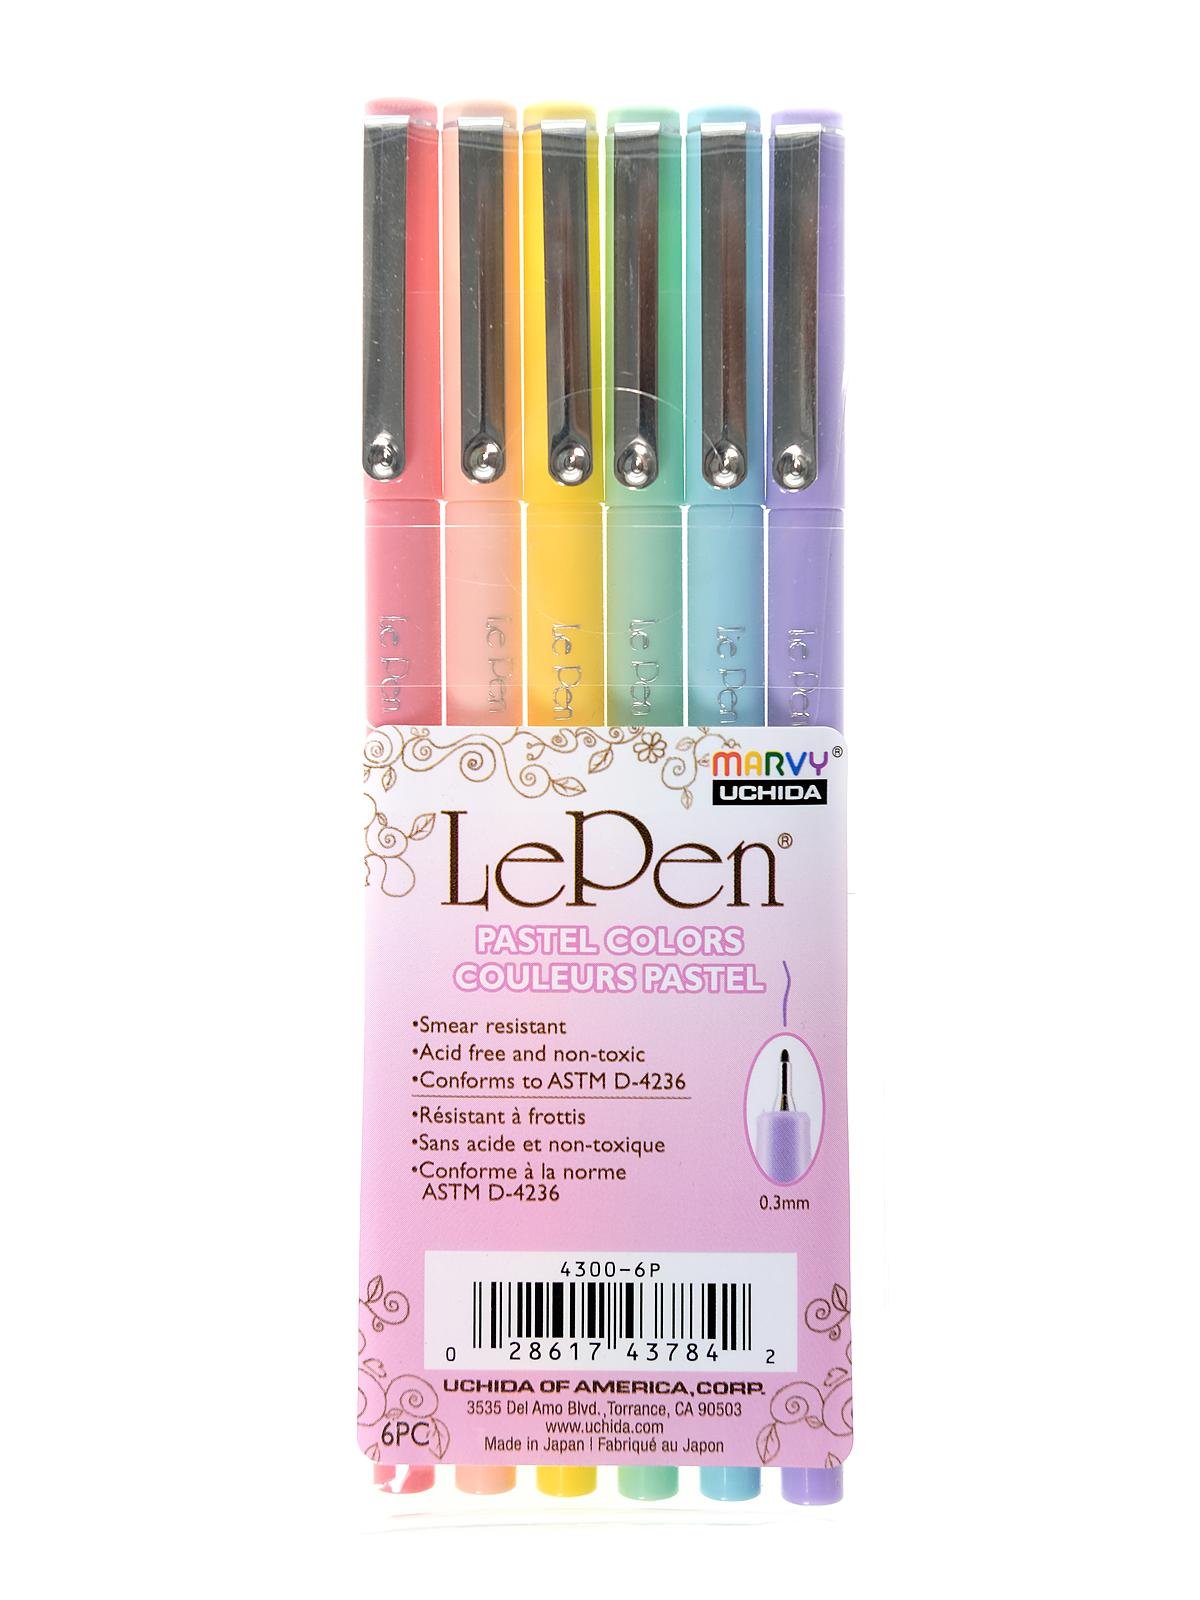  Uchida 430010A , Le Pen, 0.3 Millimeter point, Pen Set, 10  Pack, Multicolor